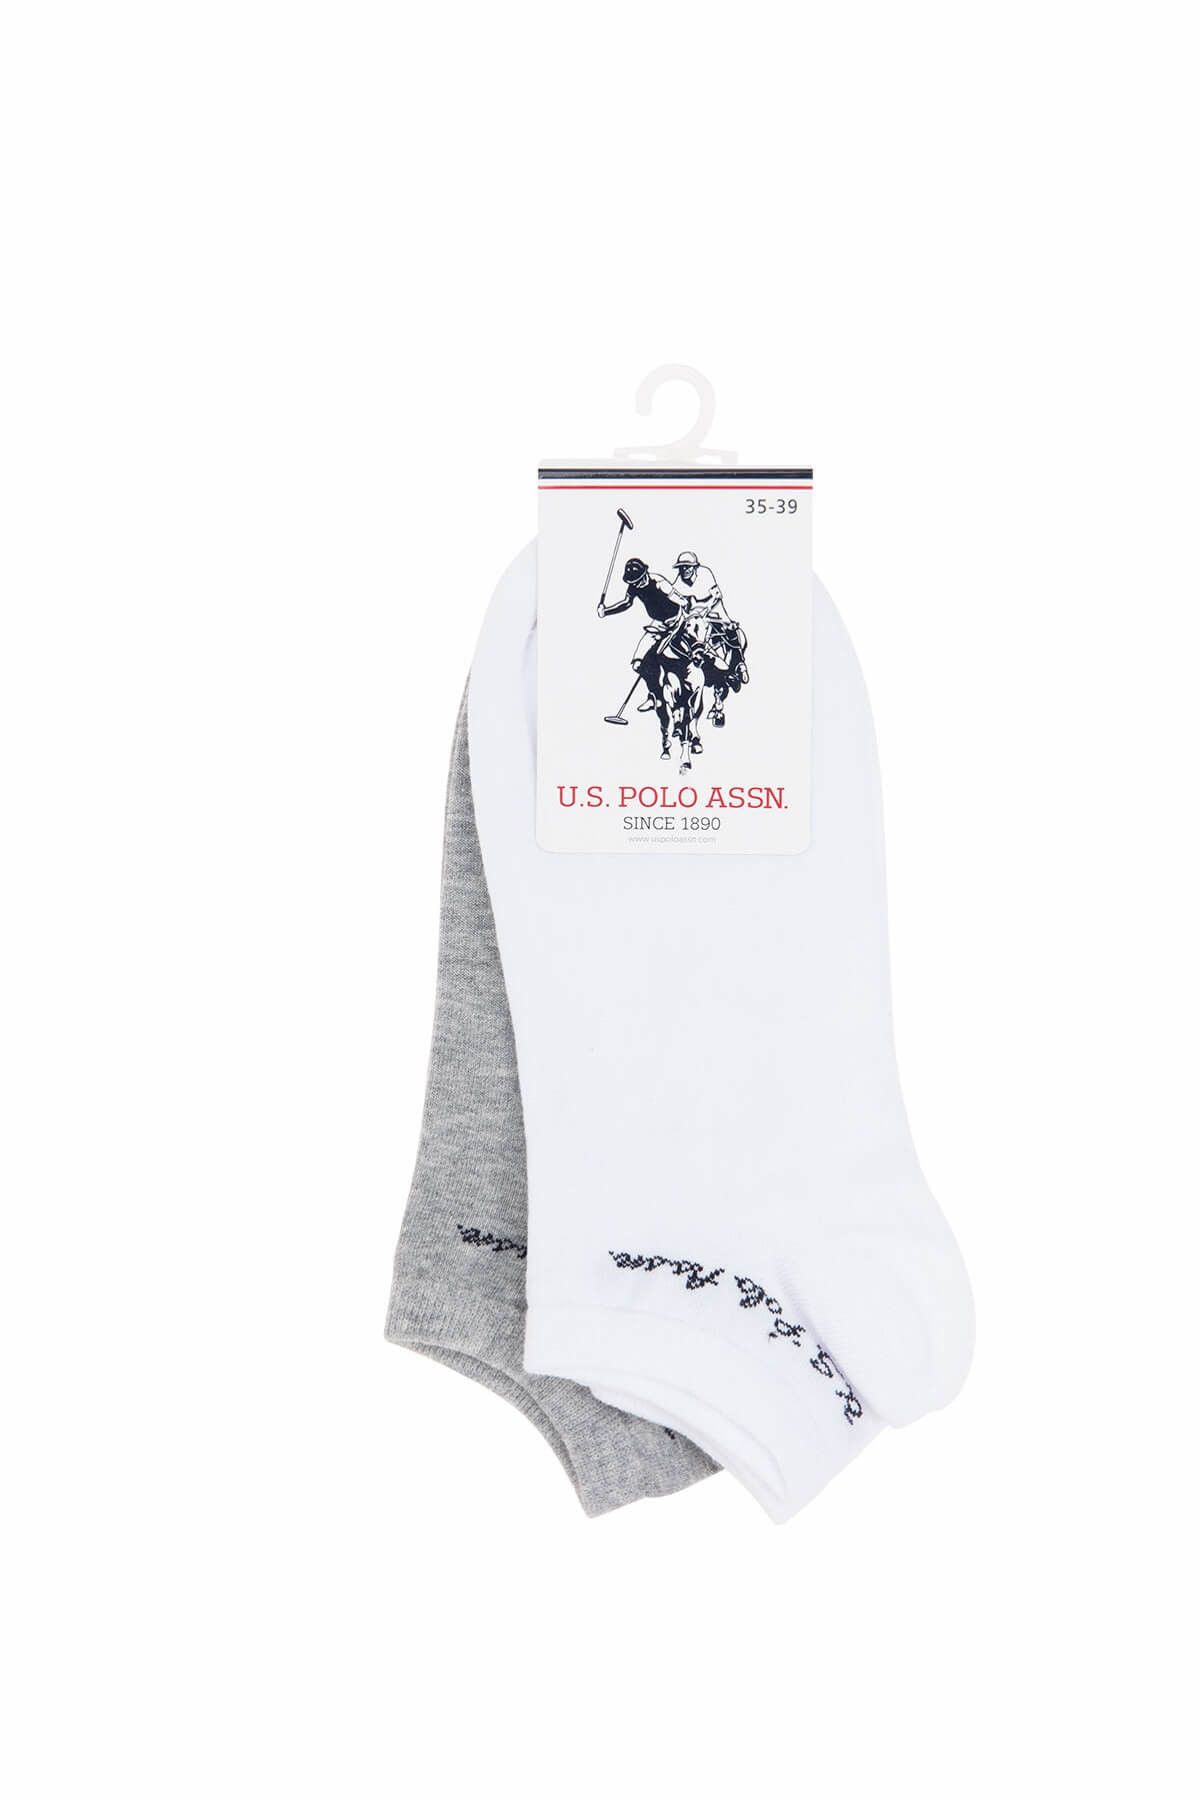 U.S. Polo Assn. Kadın Beyaz Gri 2'li Patik Çorabı HAPPYIY8